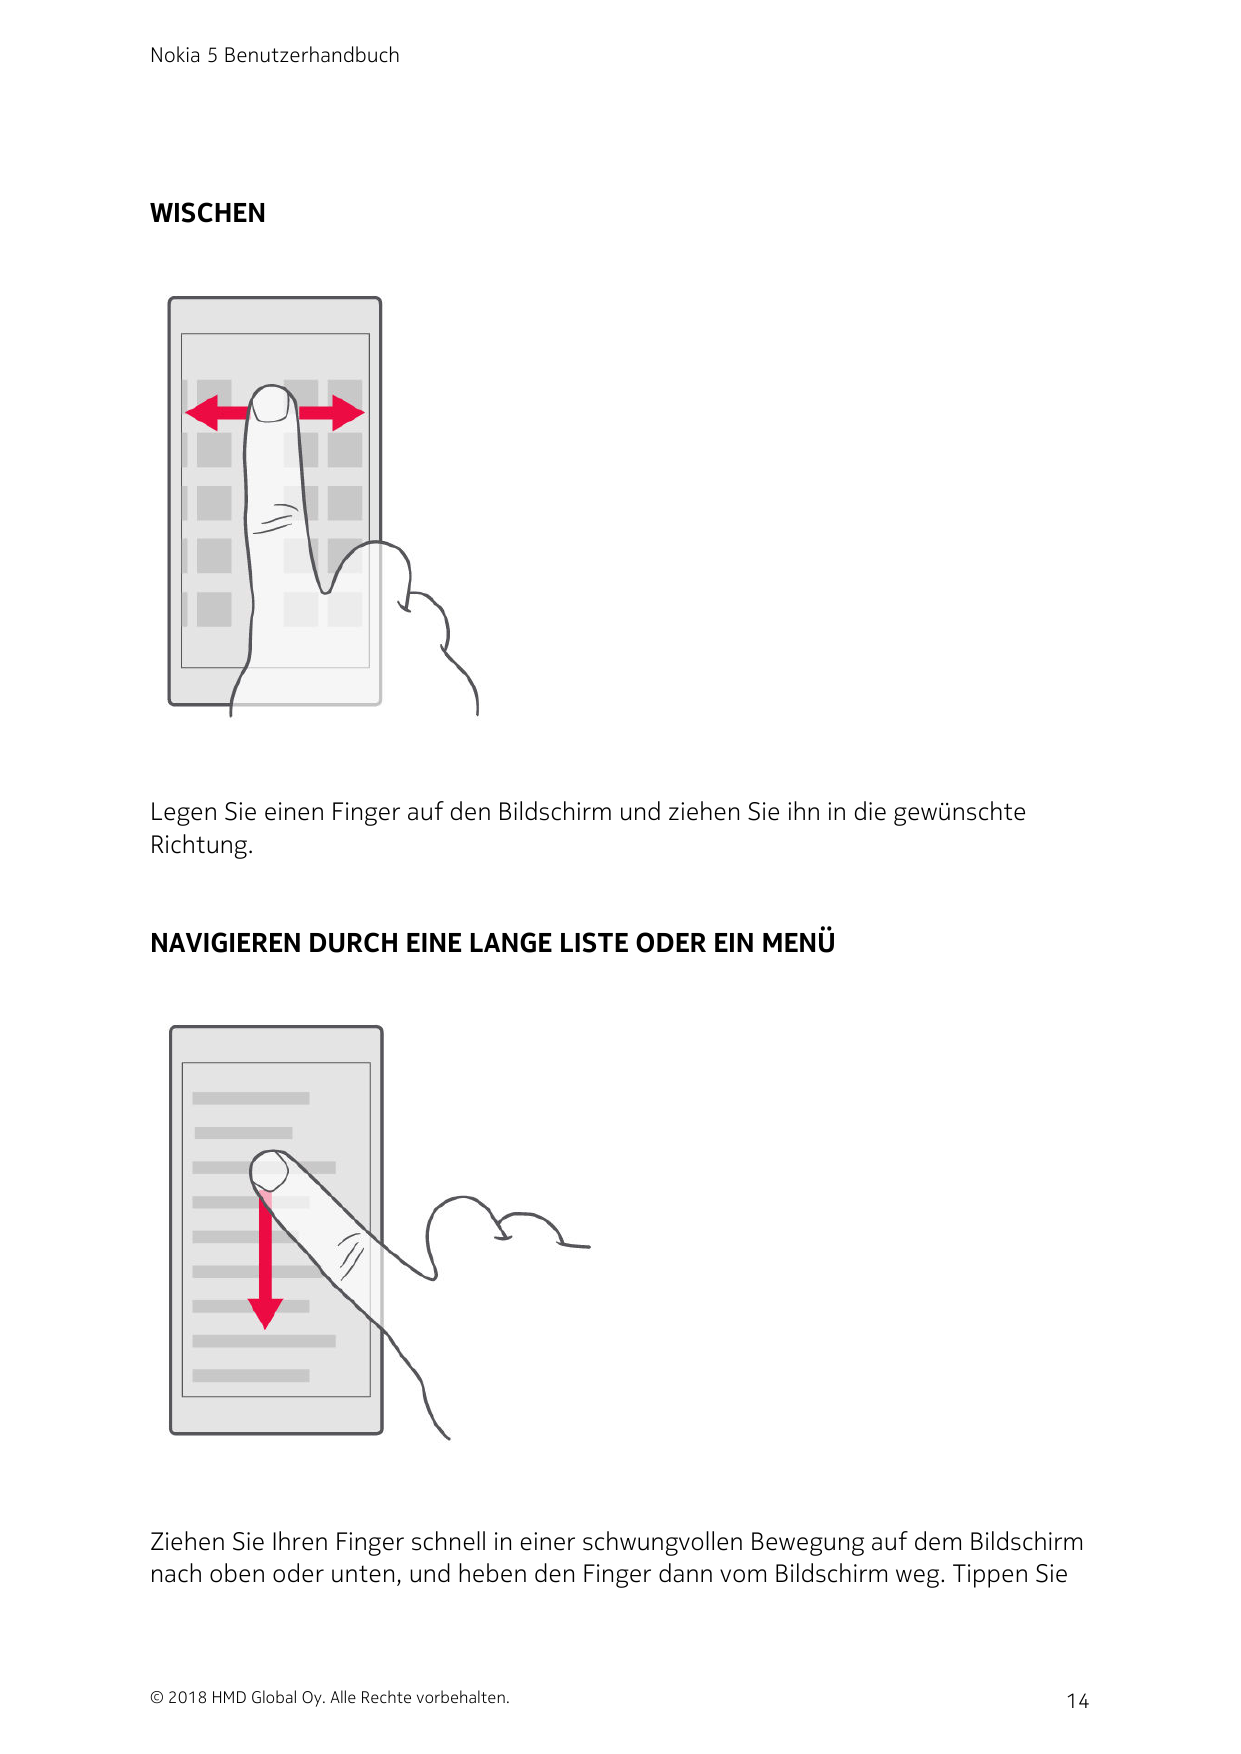 Nokia 5 BenutzerhandbuchWISCHENLegen Sie einen Finger auf den Bildschirm und ziehen Sie ihn in die gewünschteRichtung.NAVIGIEREN